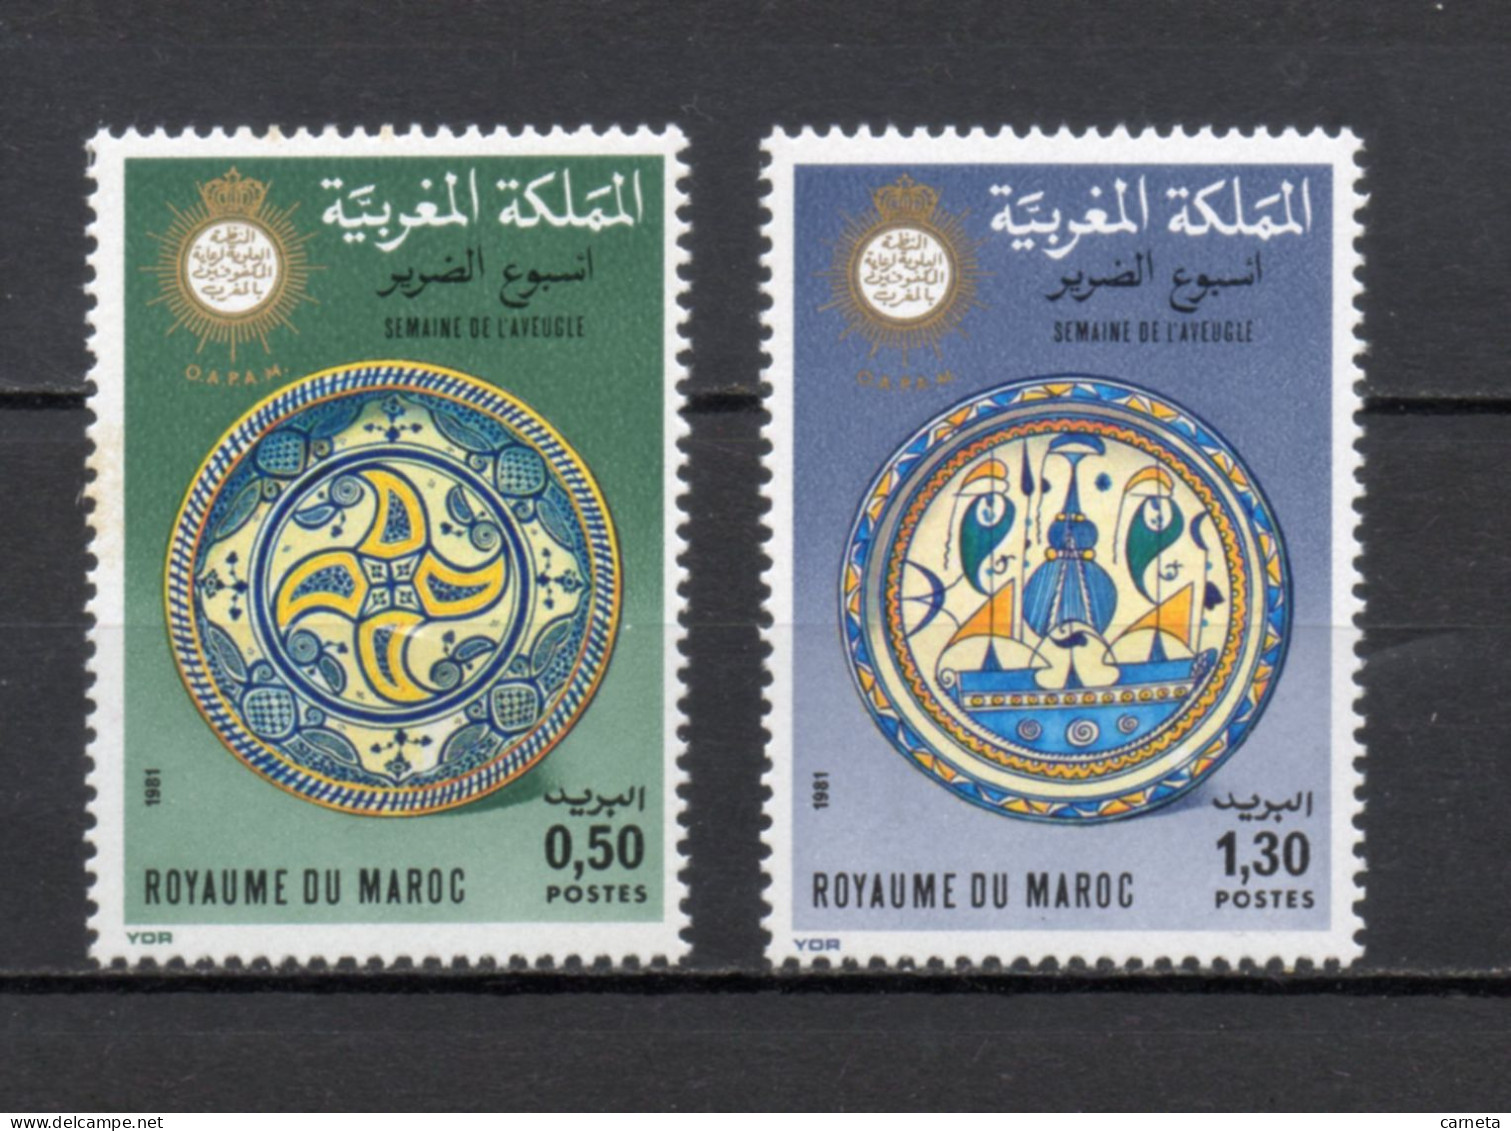 MAROC N°  887 + 888    NEUFS SANS CHARNIERE  COTE 1.50€    SEMAINE DE L'AVEUGLE - Marocco (1956-...)